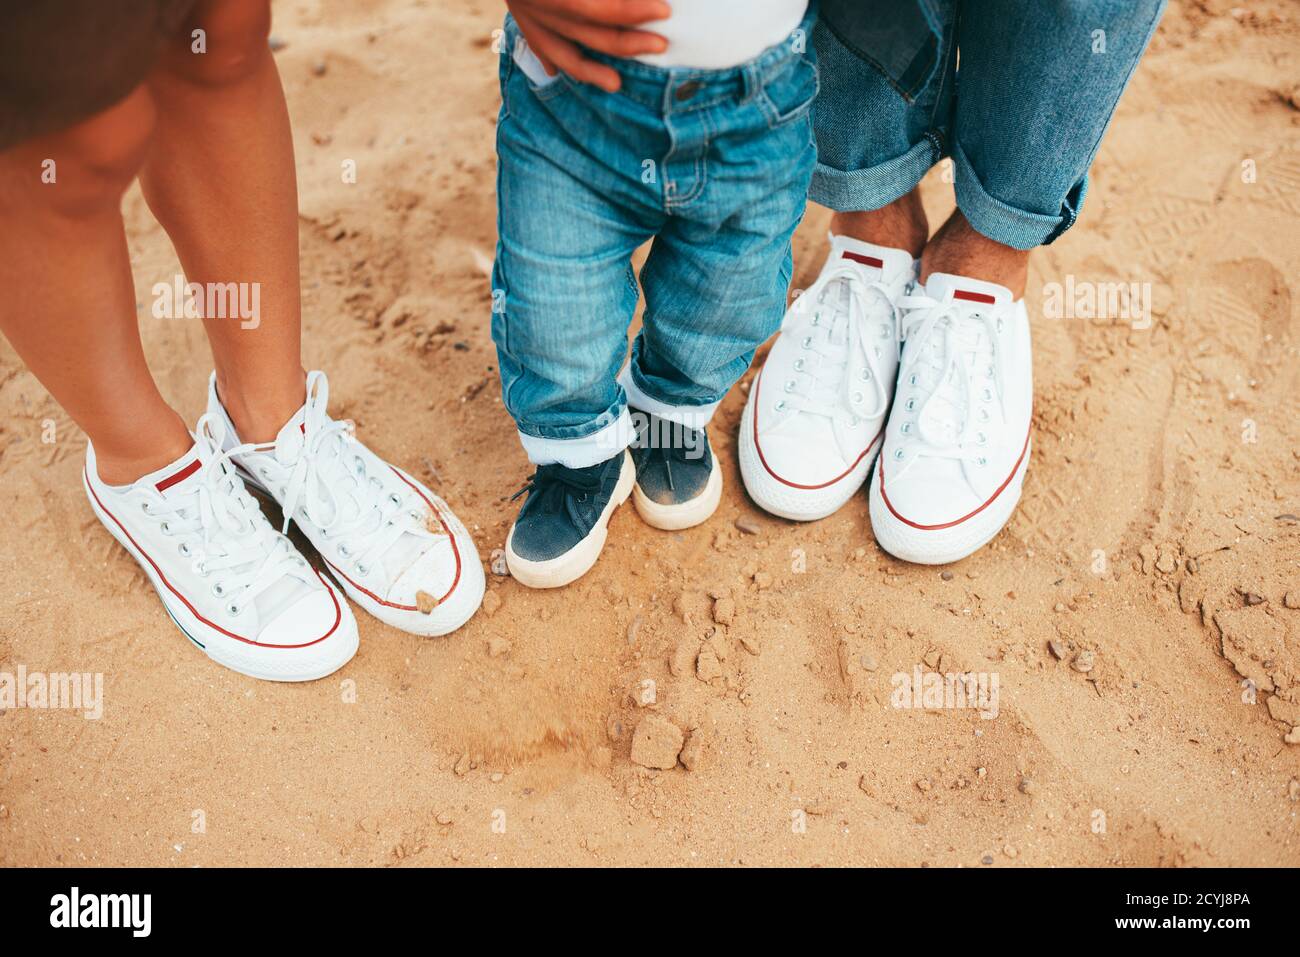 Schönes Foto von drei Paar Schuhe Mama, Papa und Baby Sohn am Strand  Stockfotografie - Alamy